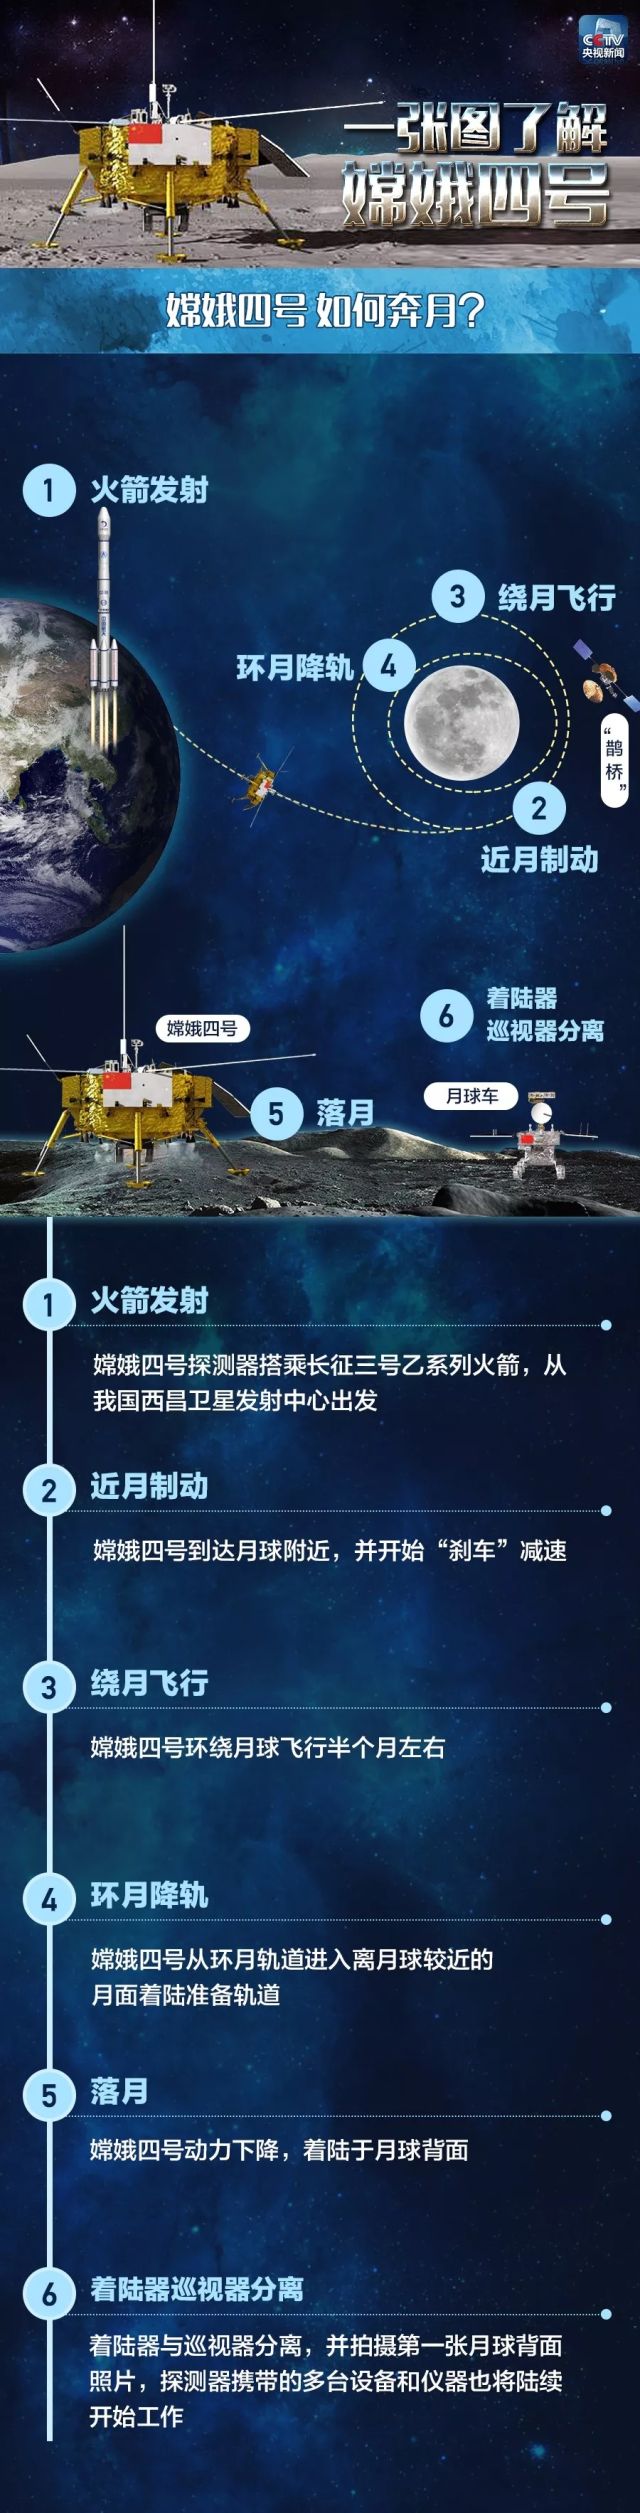 中国航天作品简介图片